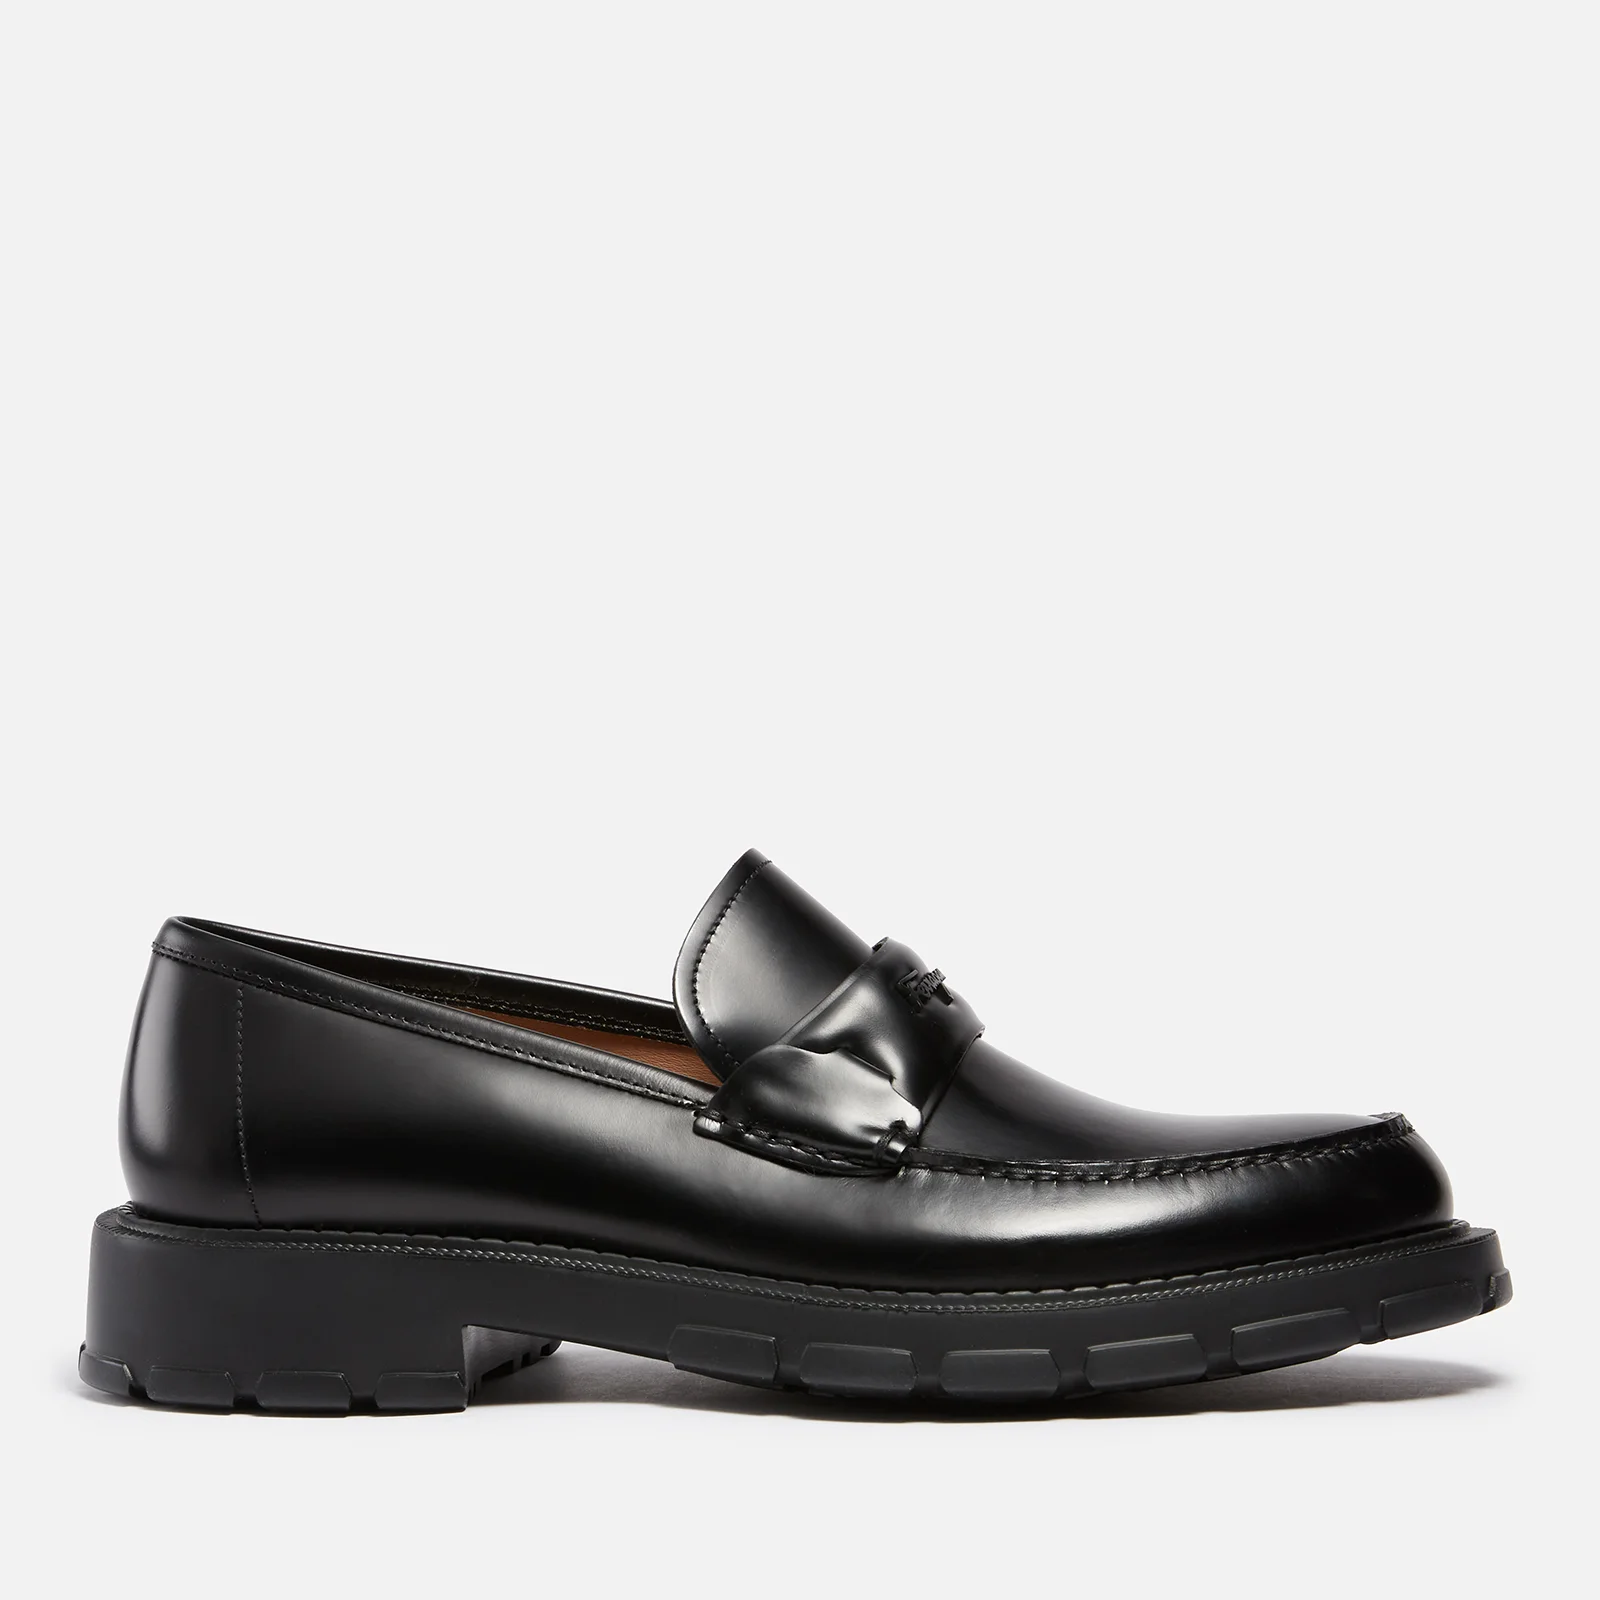 Salvatore Ferragamo Men's Magnum Leather Loafers - Black Image 1